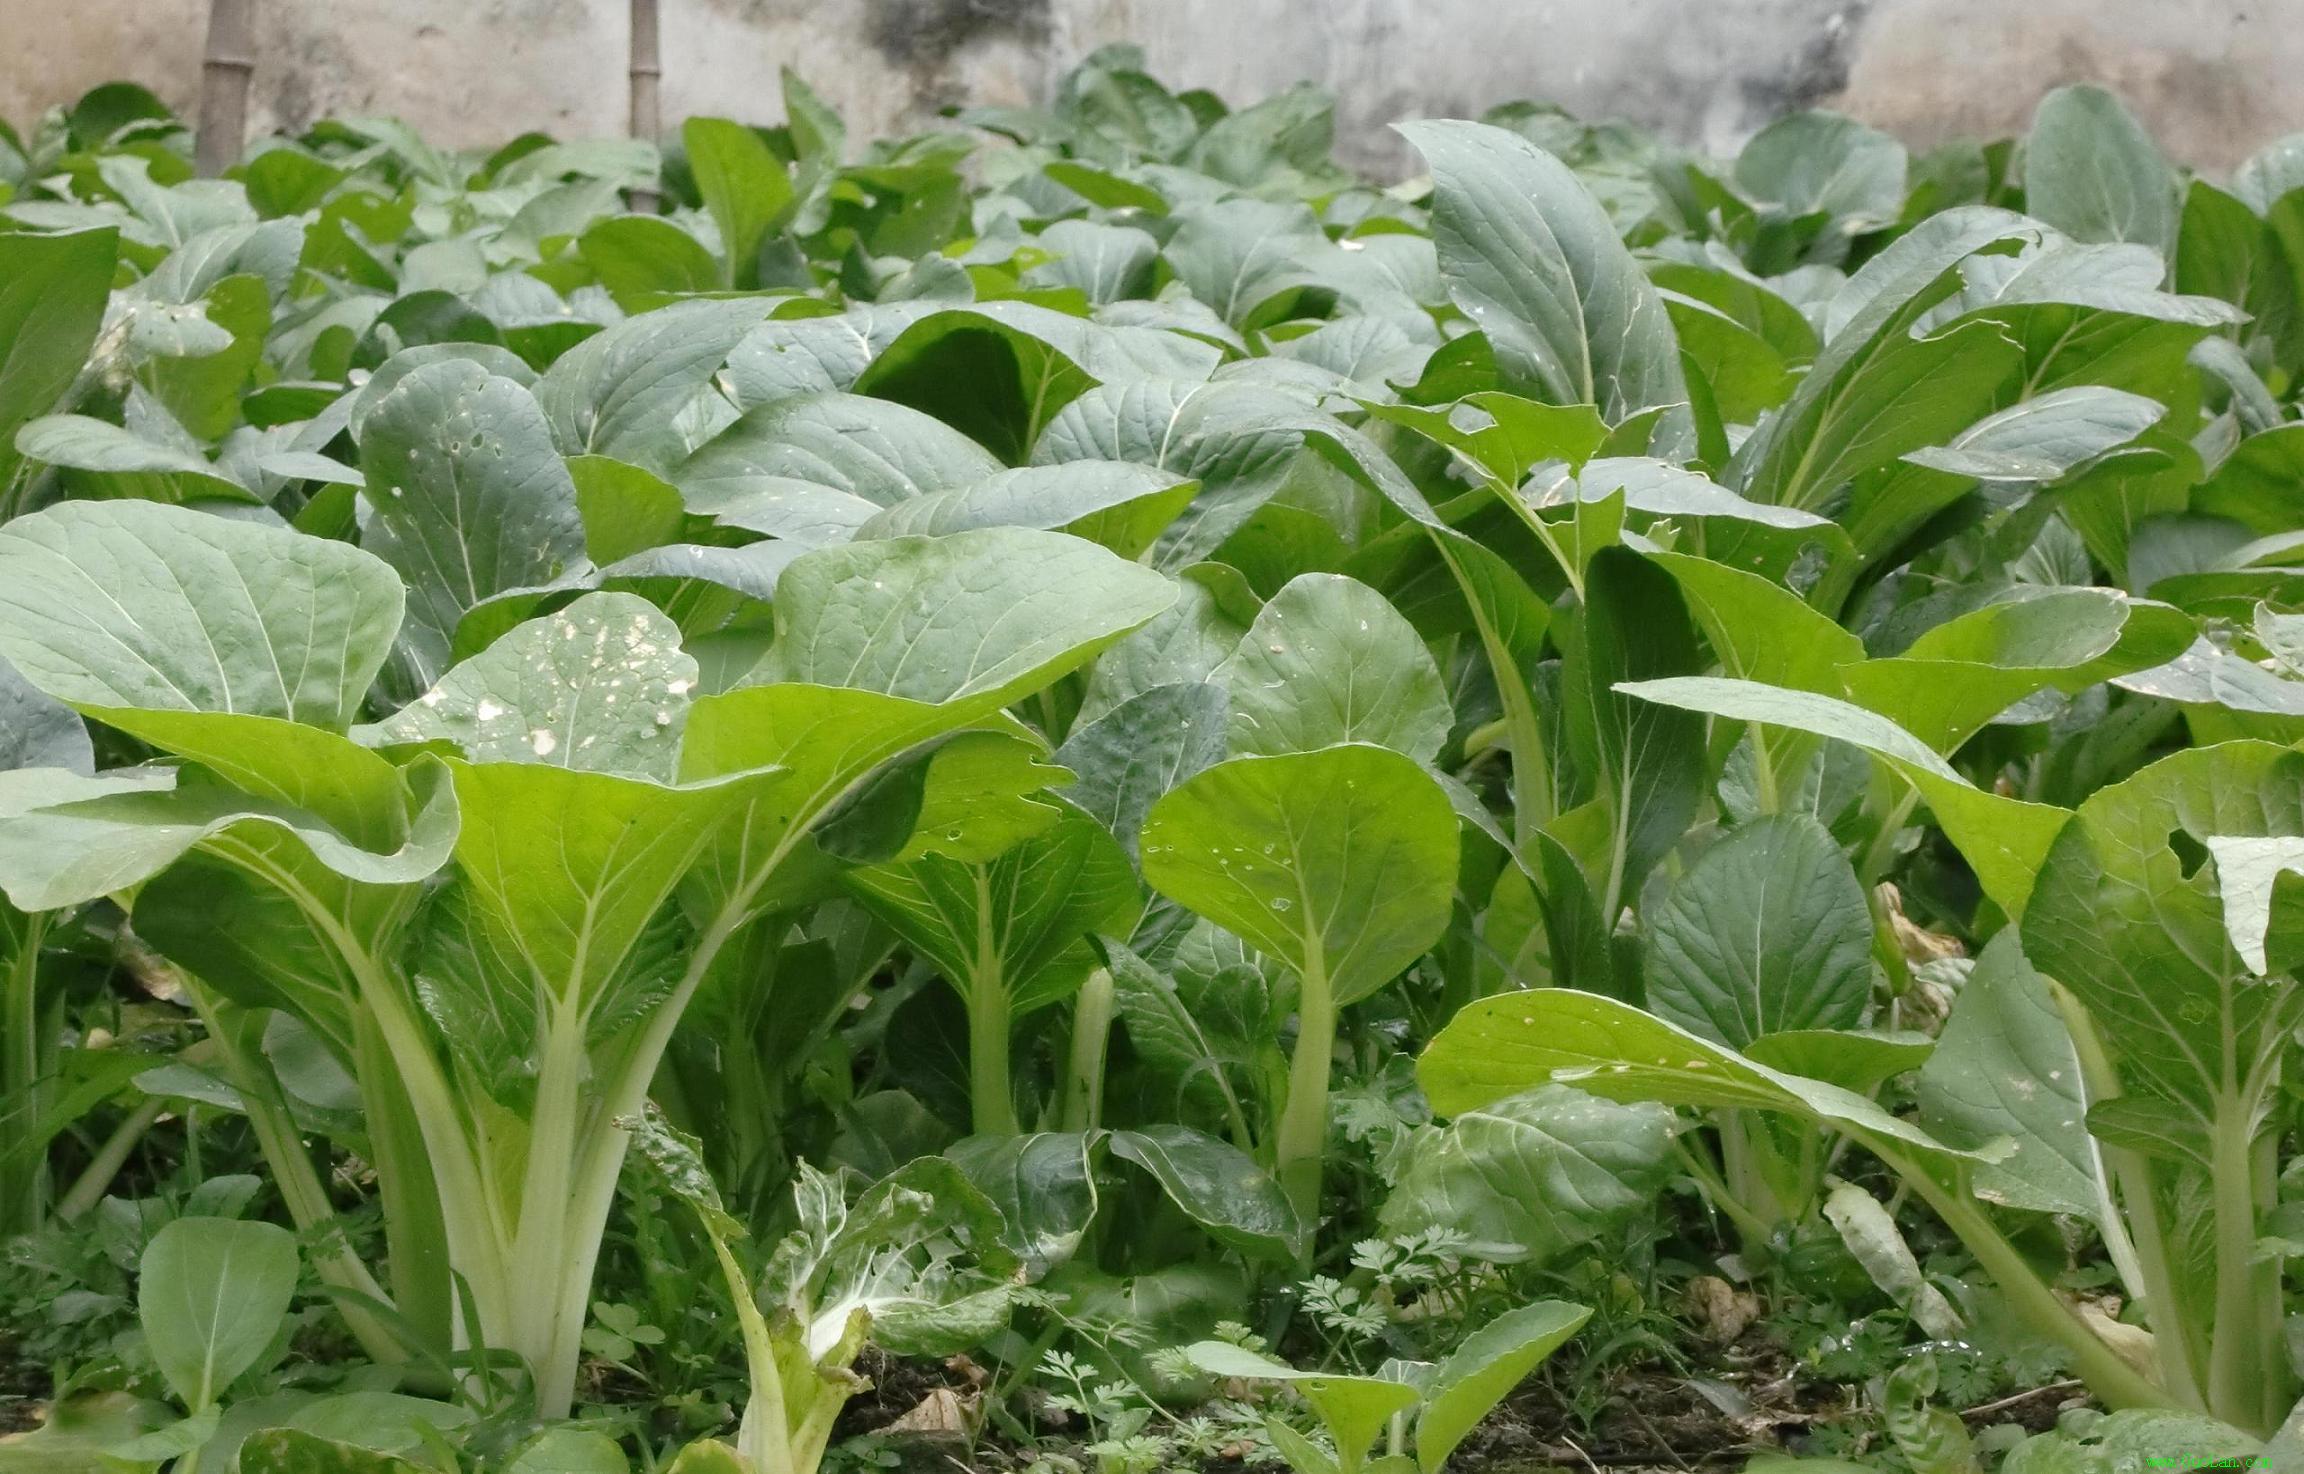 小白菜种植攻略,从播种到采收,教你一步一步种出美味的小白菜!